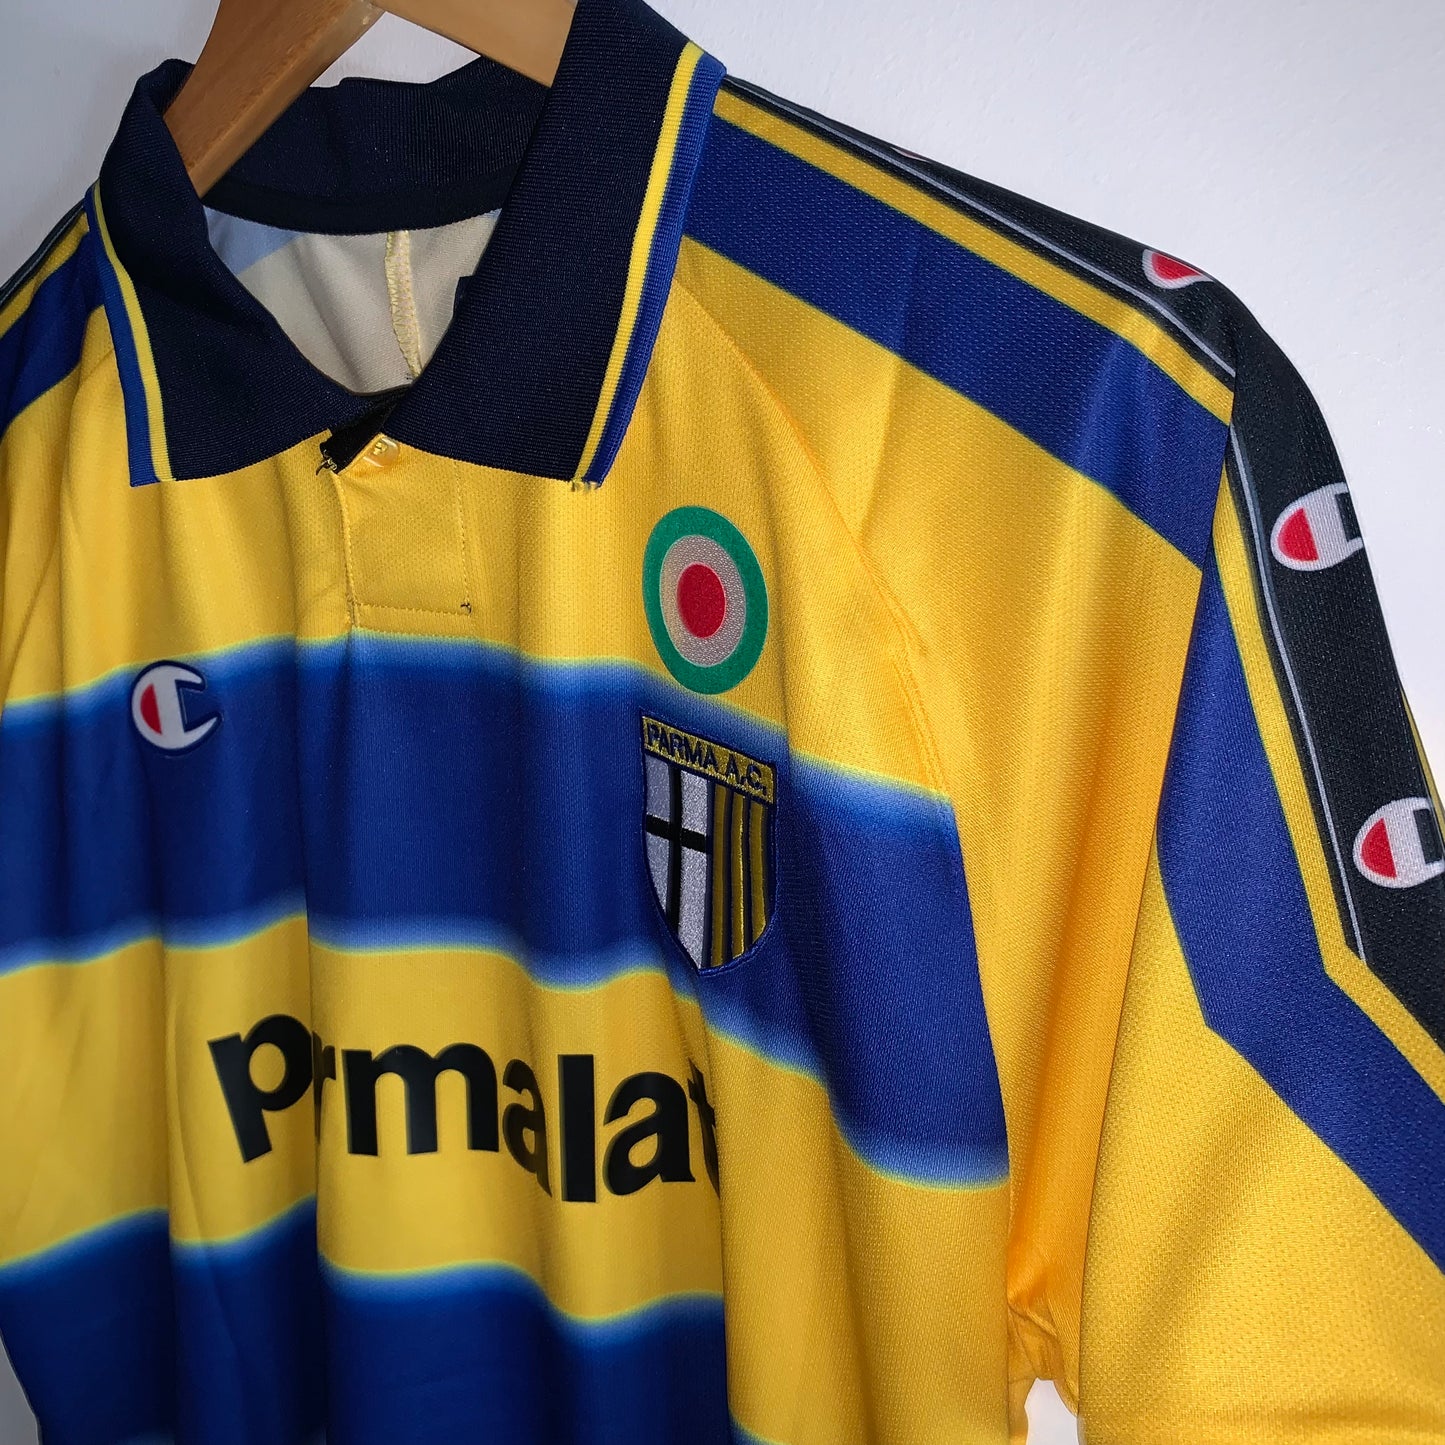 Parma 1999/00 Home shirt